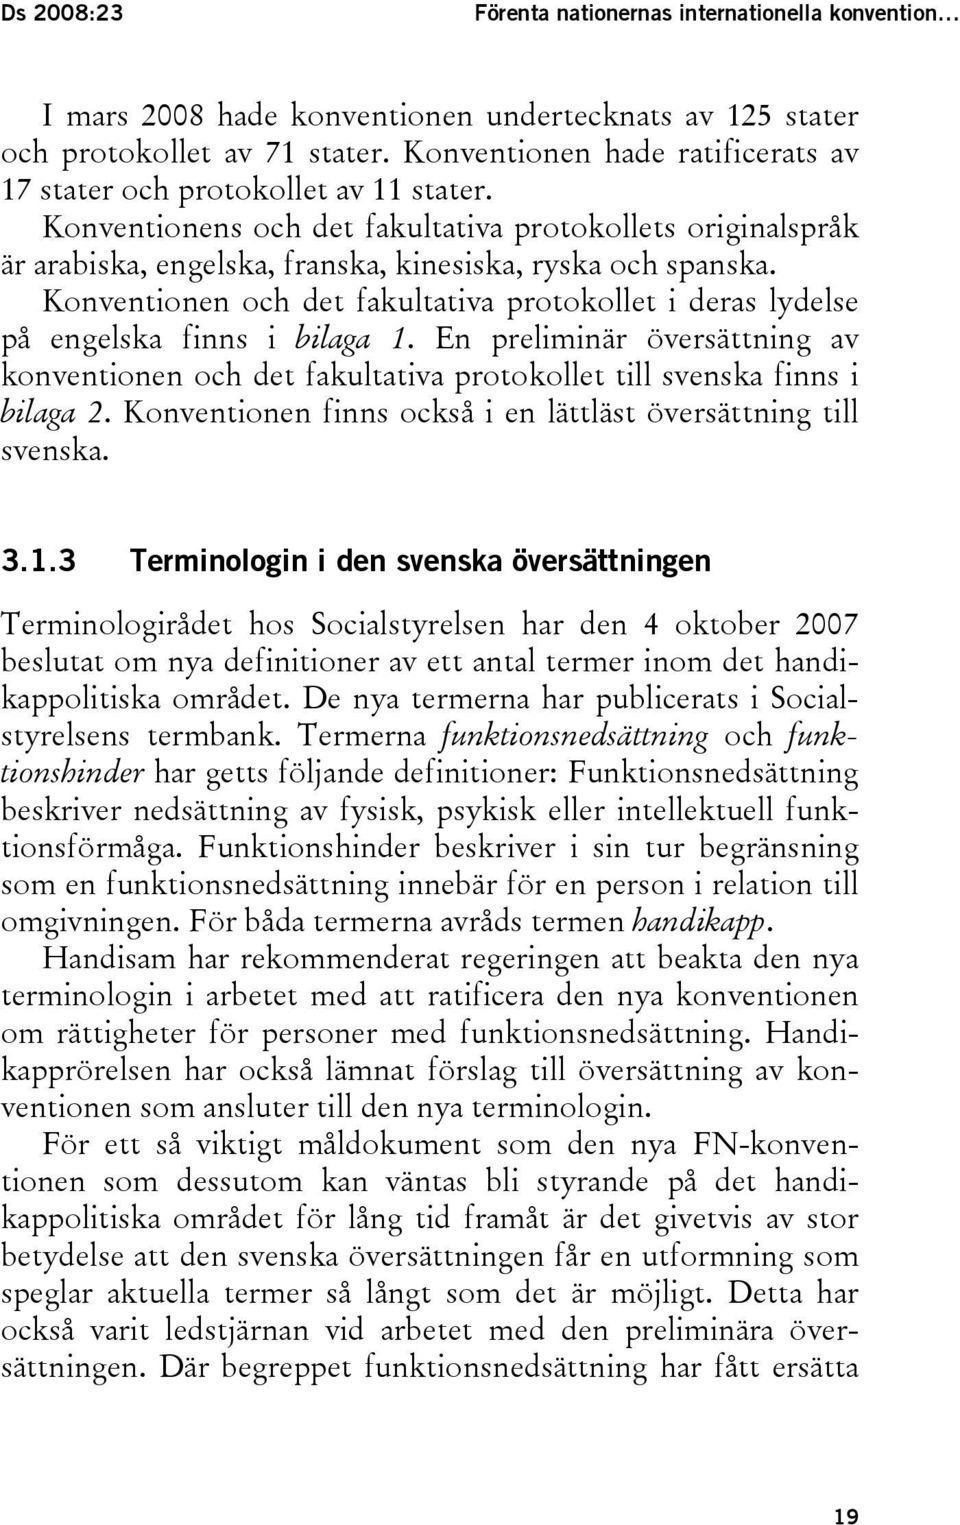 Konventionen och det fakultativa protokollet i deras lydelse på engelska finns i bilaga 1. En preliminär översättning av konventionen och det fakultativa protokollet till svenska finns i bilaga 2.